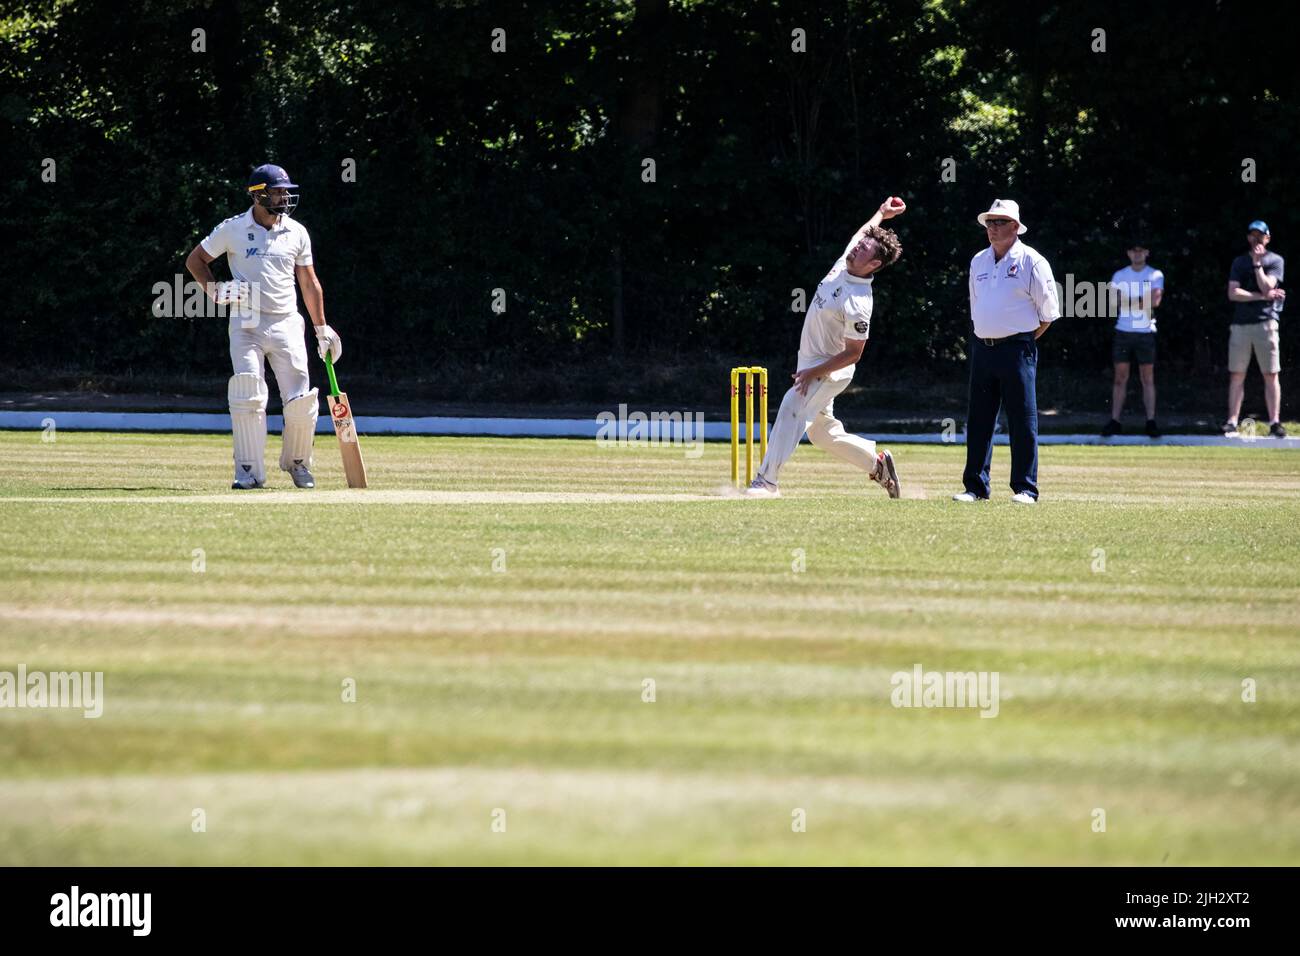 Ein schneller Bowler nähert sich den Stumps, um den Batsman in einem Cricket-Spiel der Sommerliga in Huddersfield, Yorkshire, England, anzustoßen Stockfoto